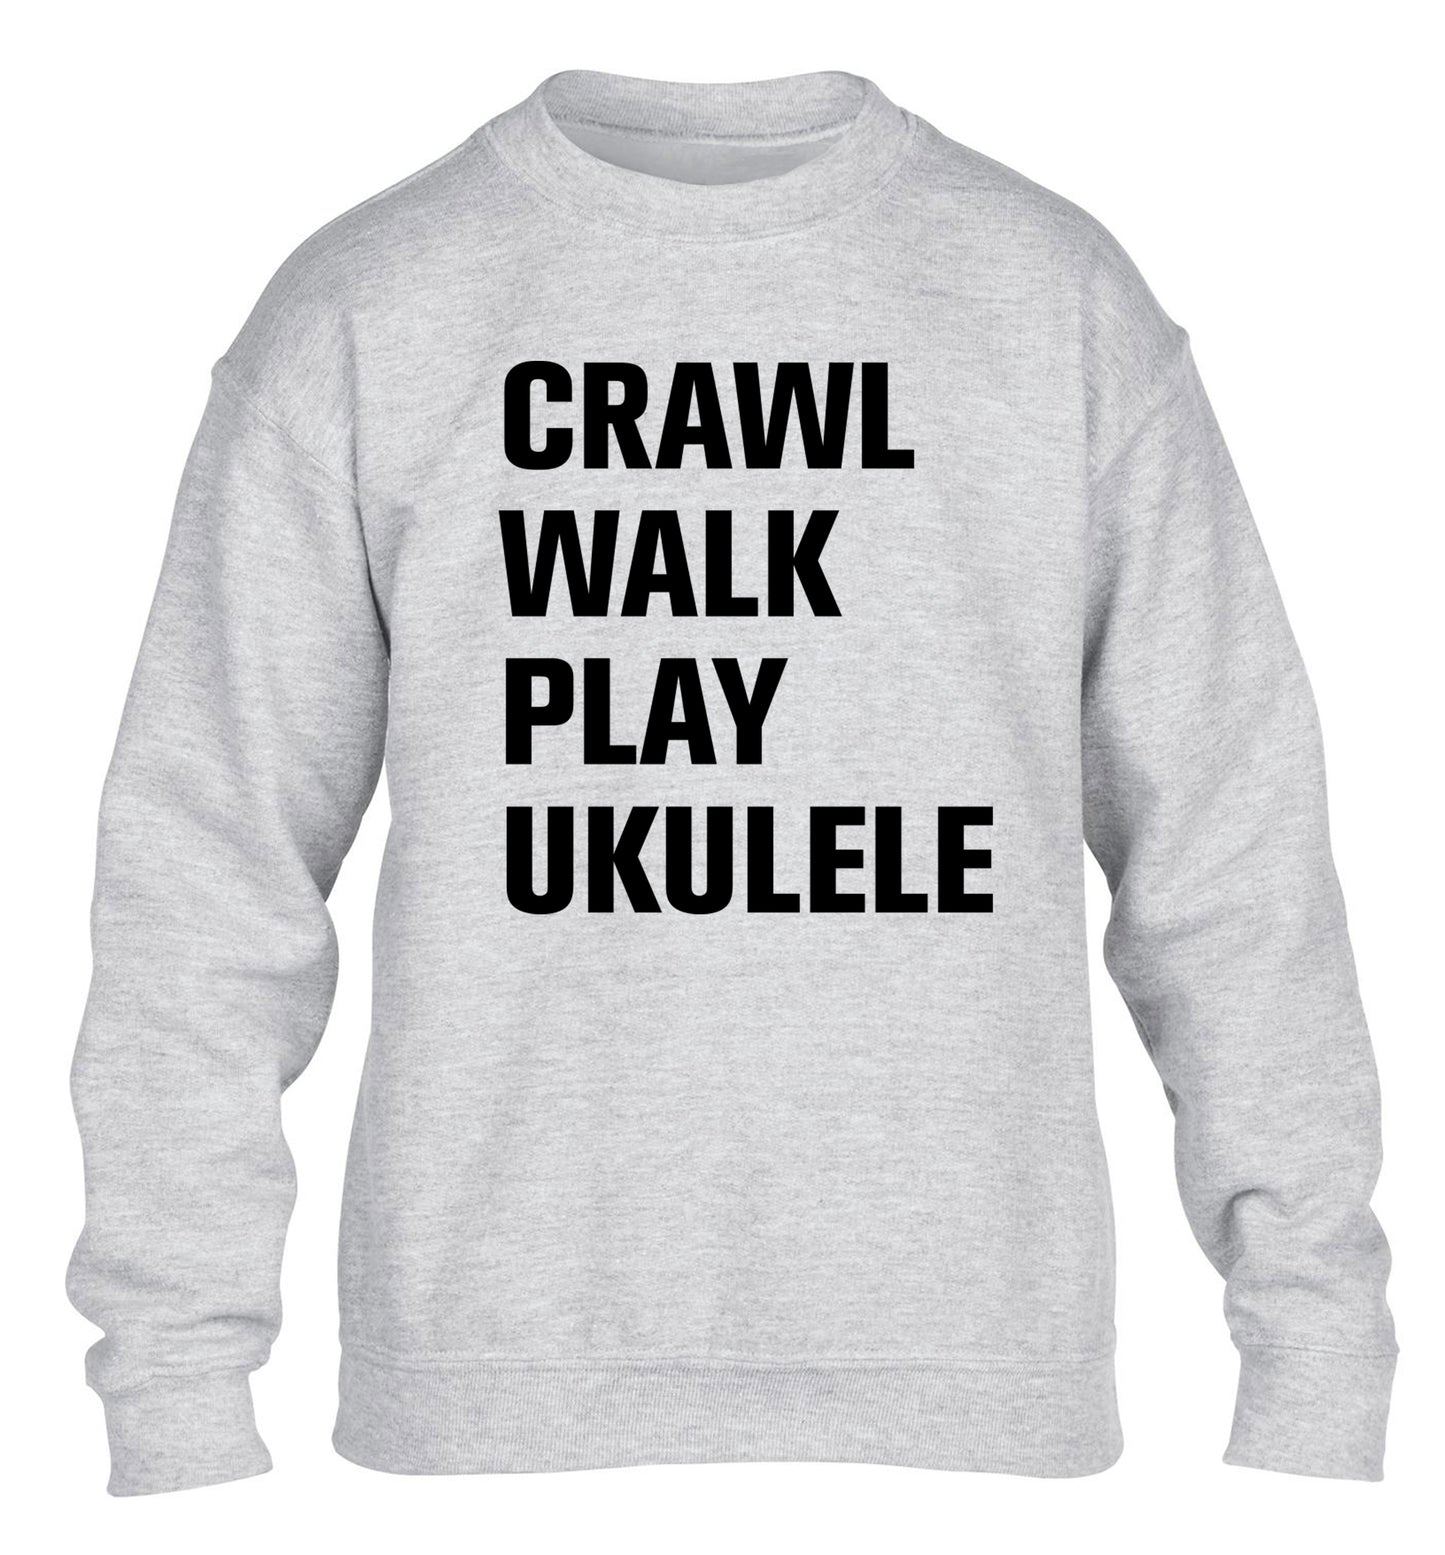 Crawl walk play ukulele children's grey sweater 12-13 Years